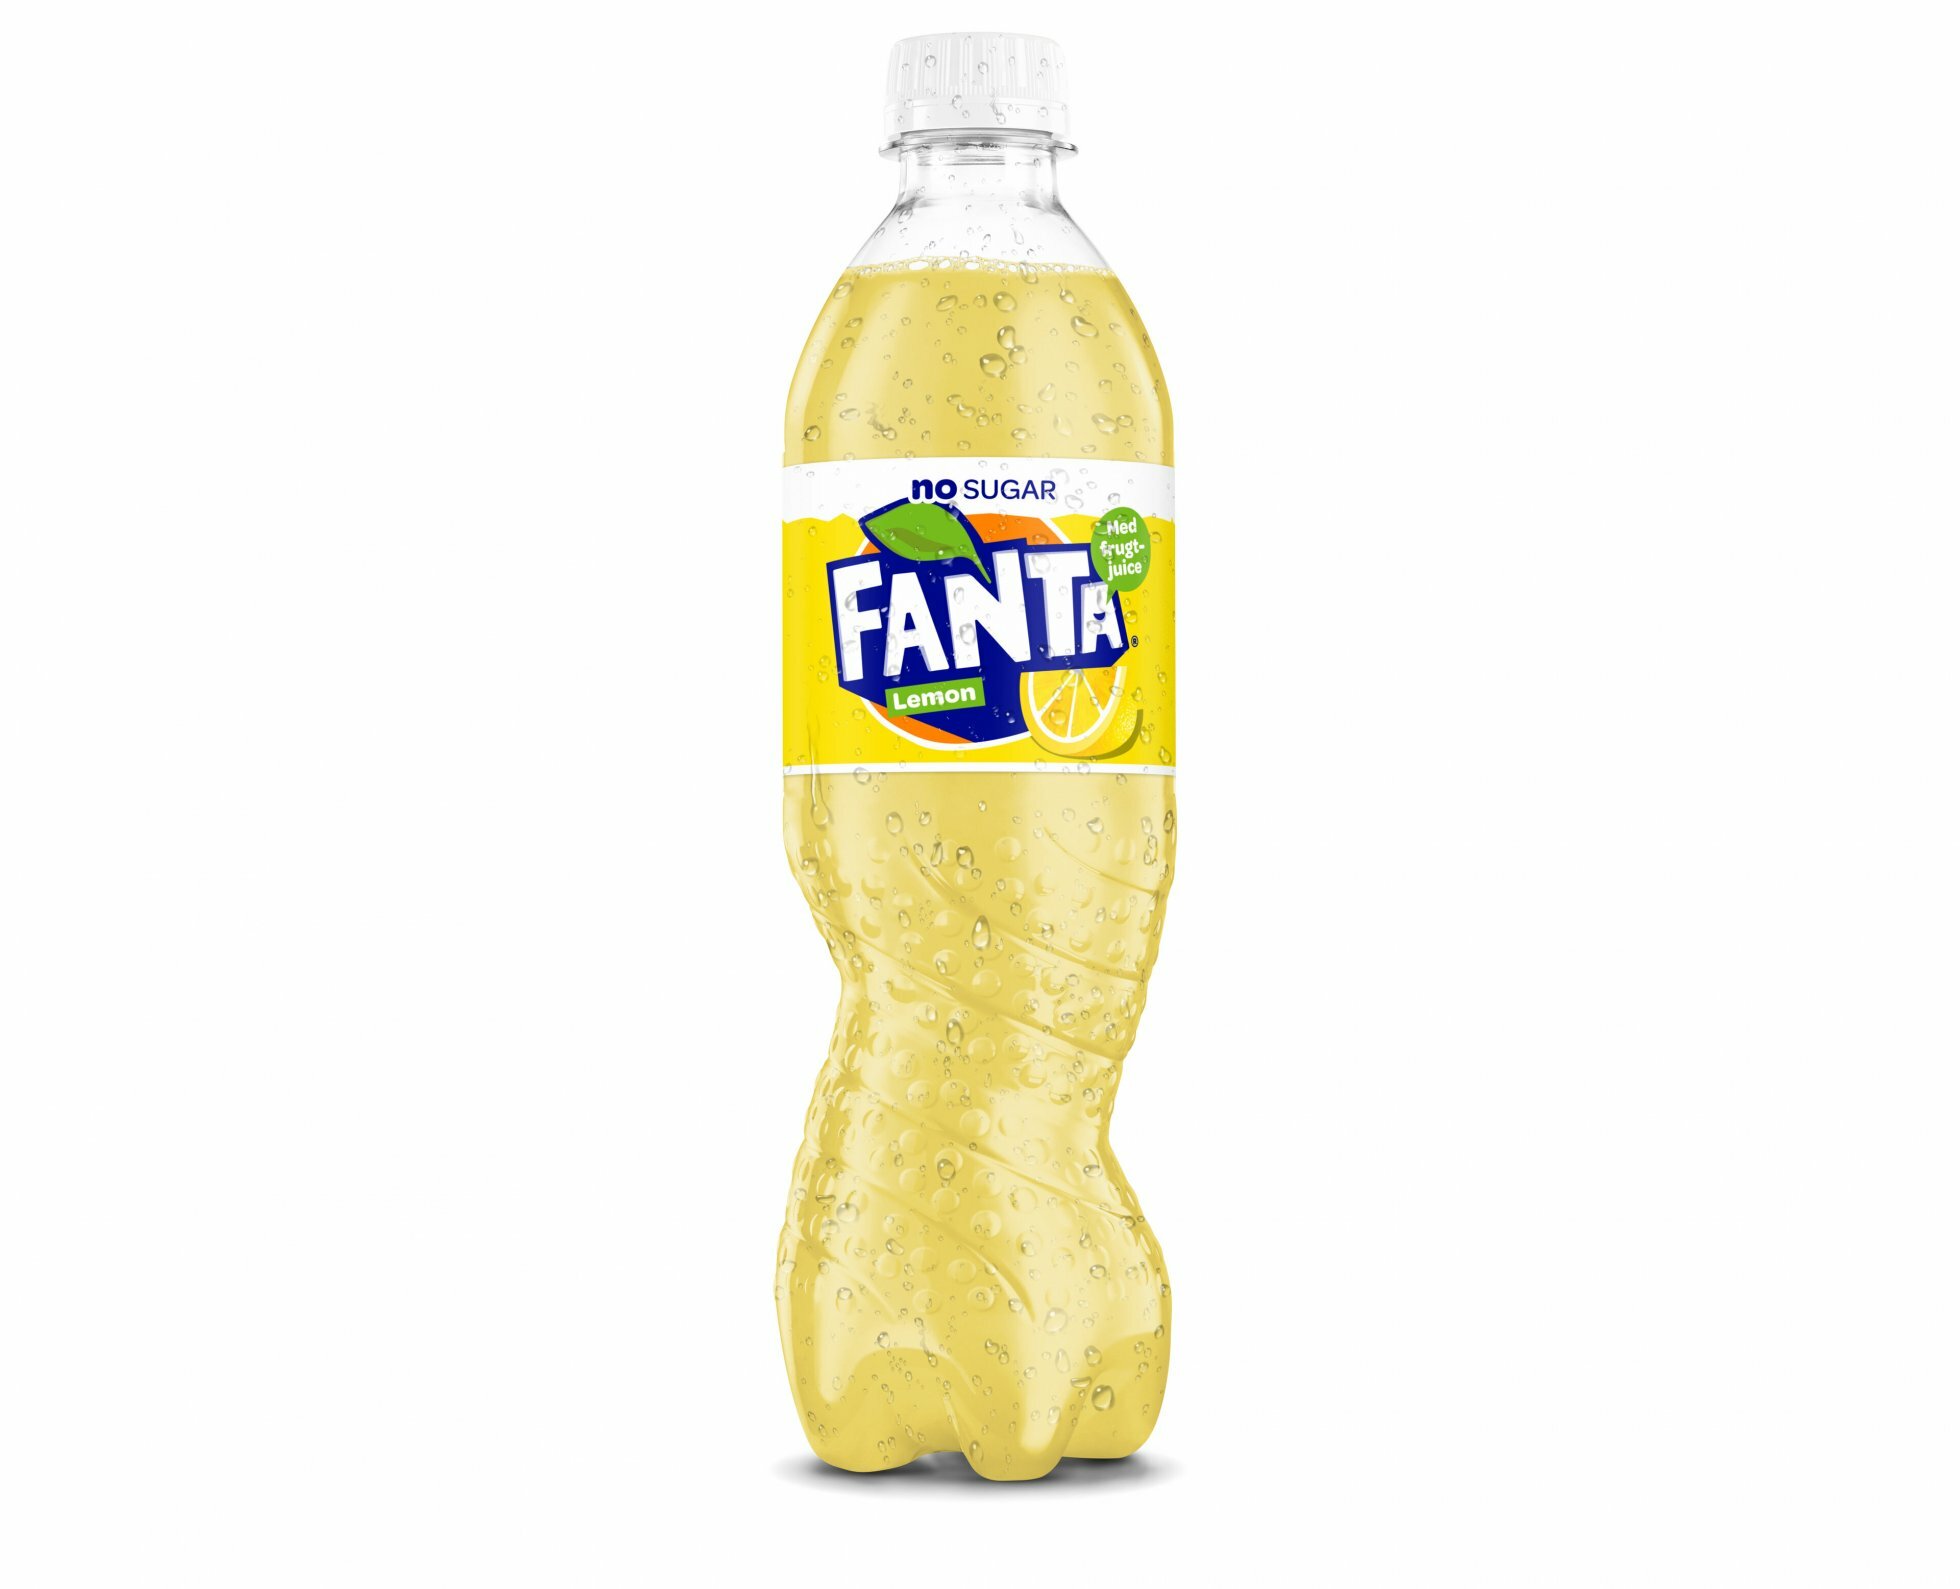 Doven Destruktiv Van Fanta Lemon udgår fra det faste sortiment til fordel for Fanta Lemon No  Sugar - Mandekogebogen